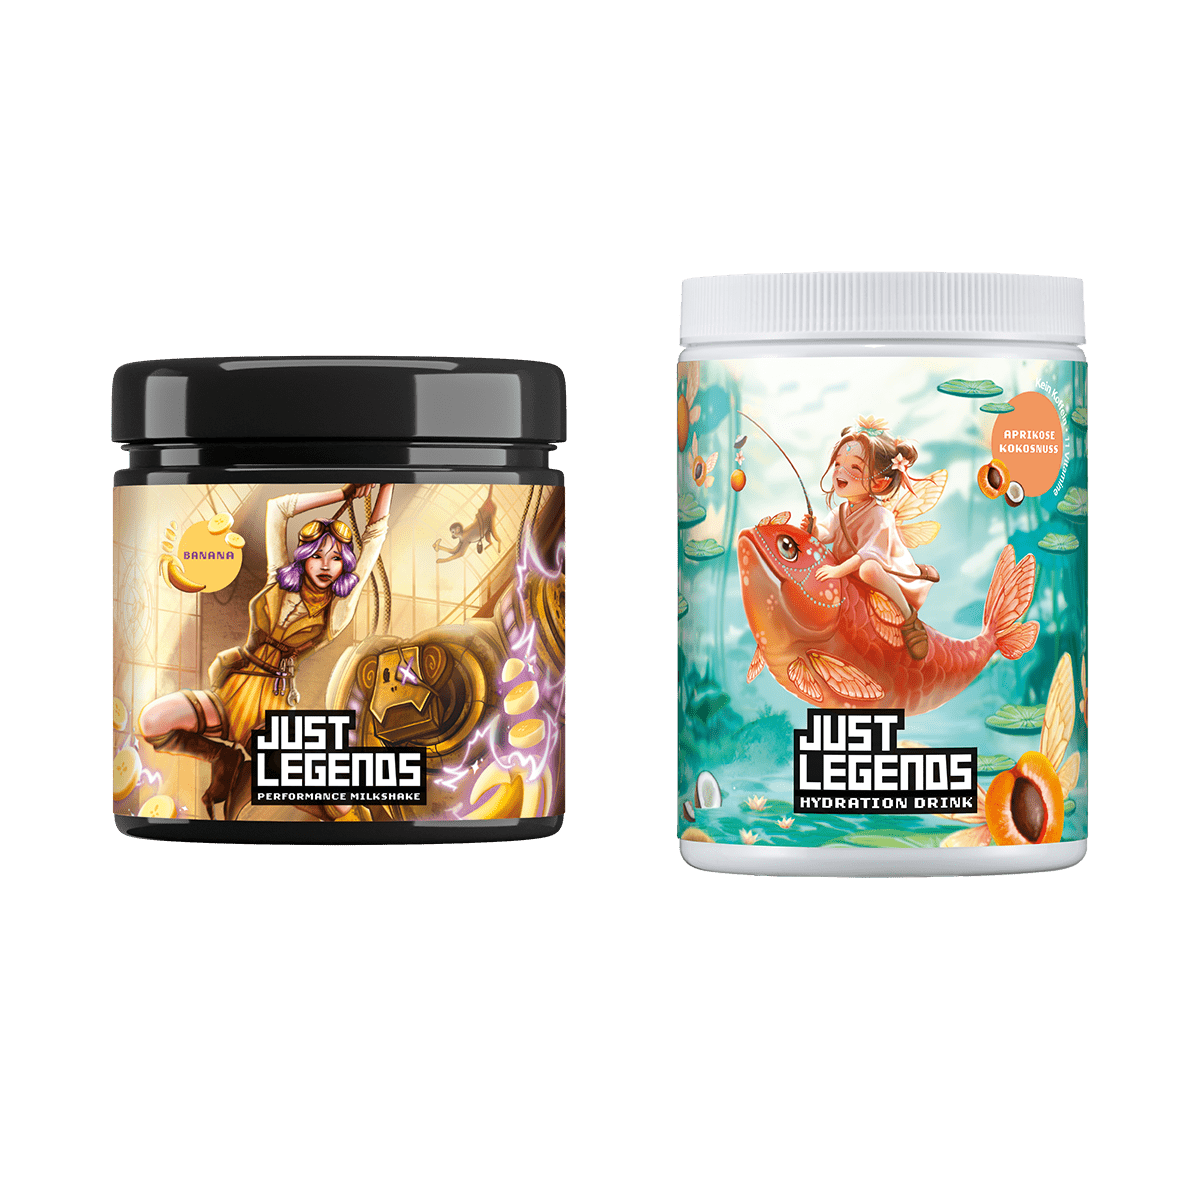 Just Legends Milkshake & Hydration Pack | Funktionaler, veganer Multipack auf Pulverbasis ohne Zucker, mit wenig Kalorien, vielen Vitaminen und natürlichen Aromen.